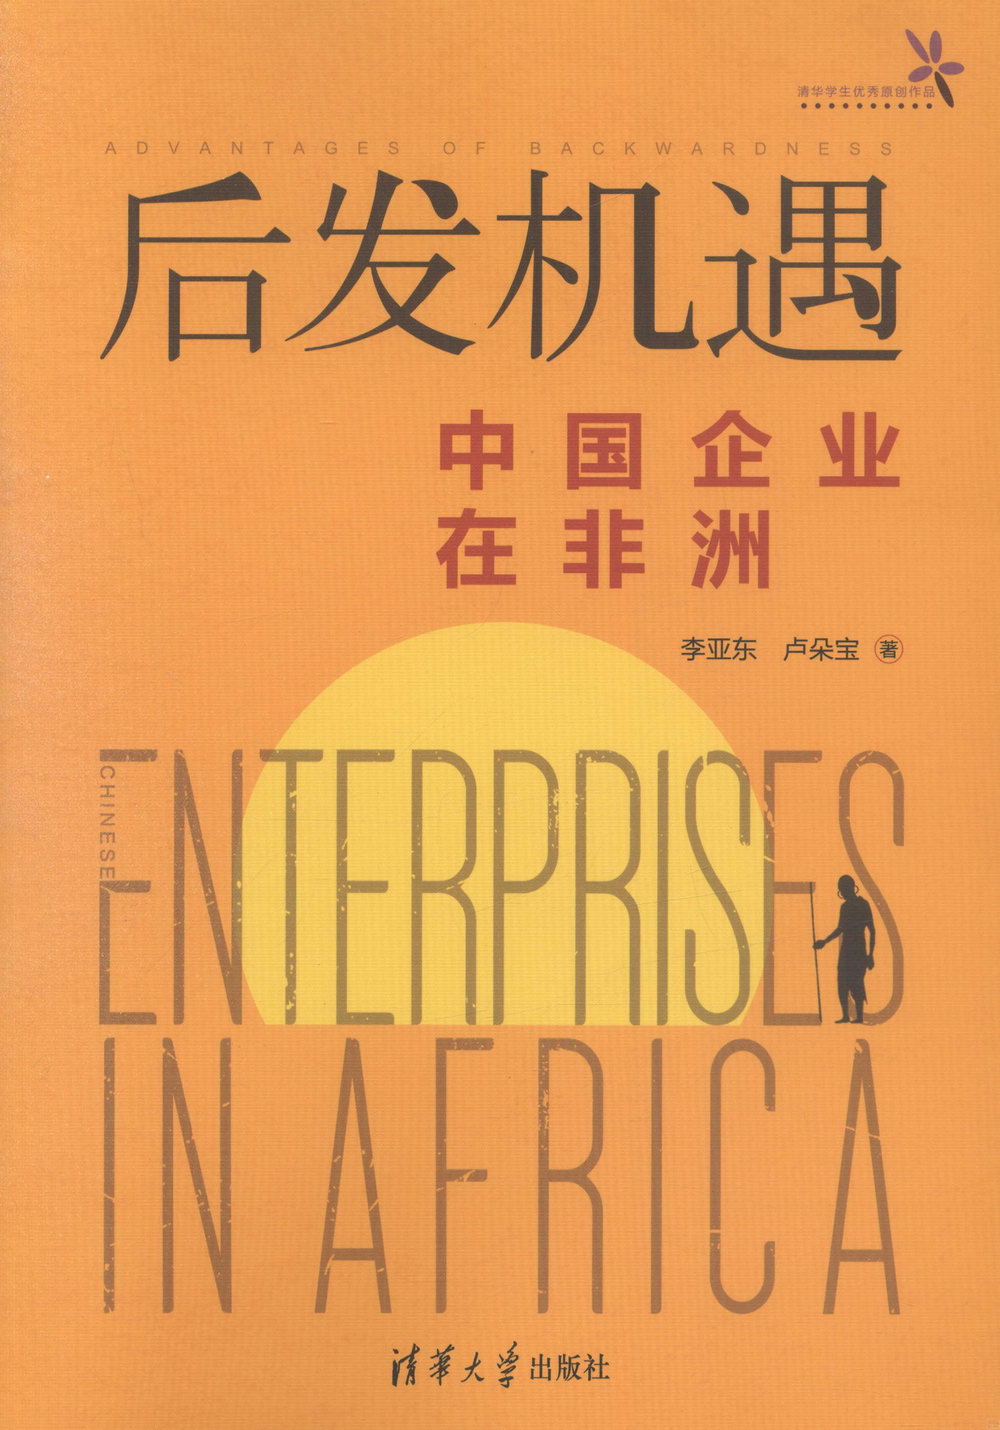 后發機遇：中國企業在非洲